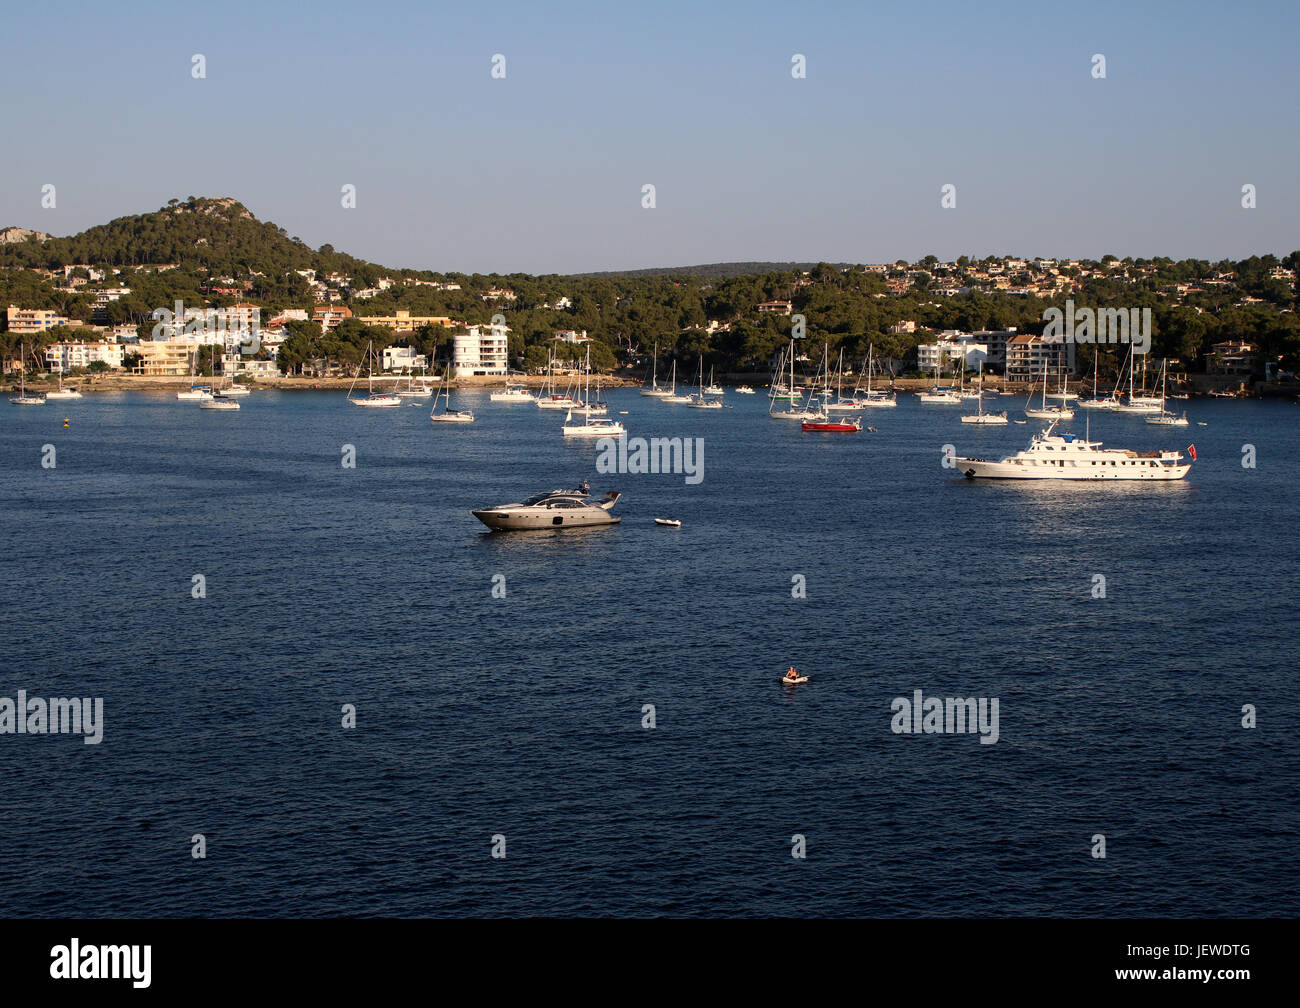 Superyacht Haven - classic superyacht 'Trafalgar' + yachts and boats + panorama - Bay of Santa Ponsa / Santa Ponca, Calvia, SW Mallorca / Majorca Stock Photo